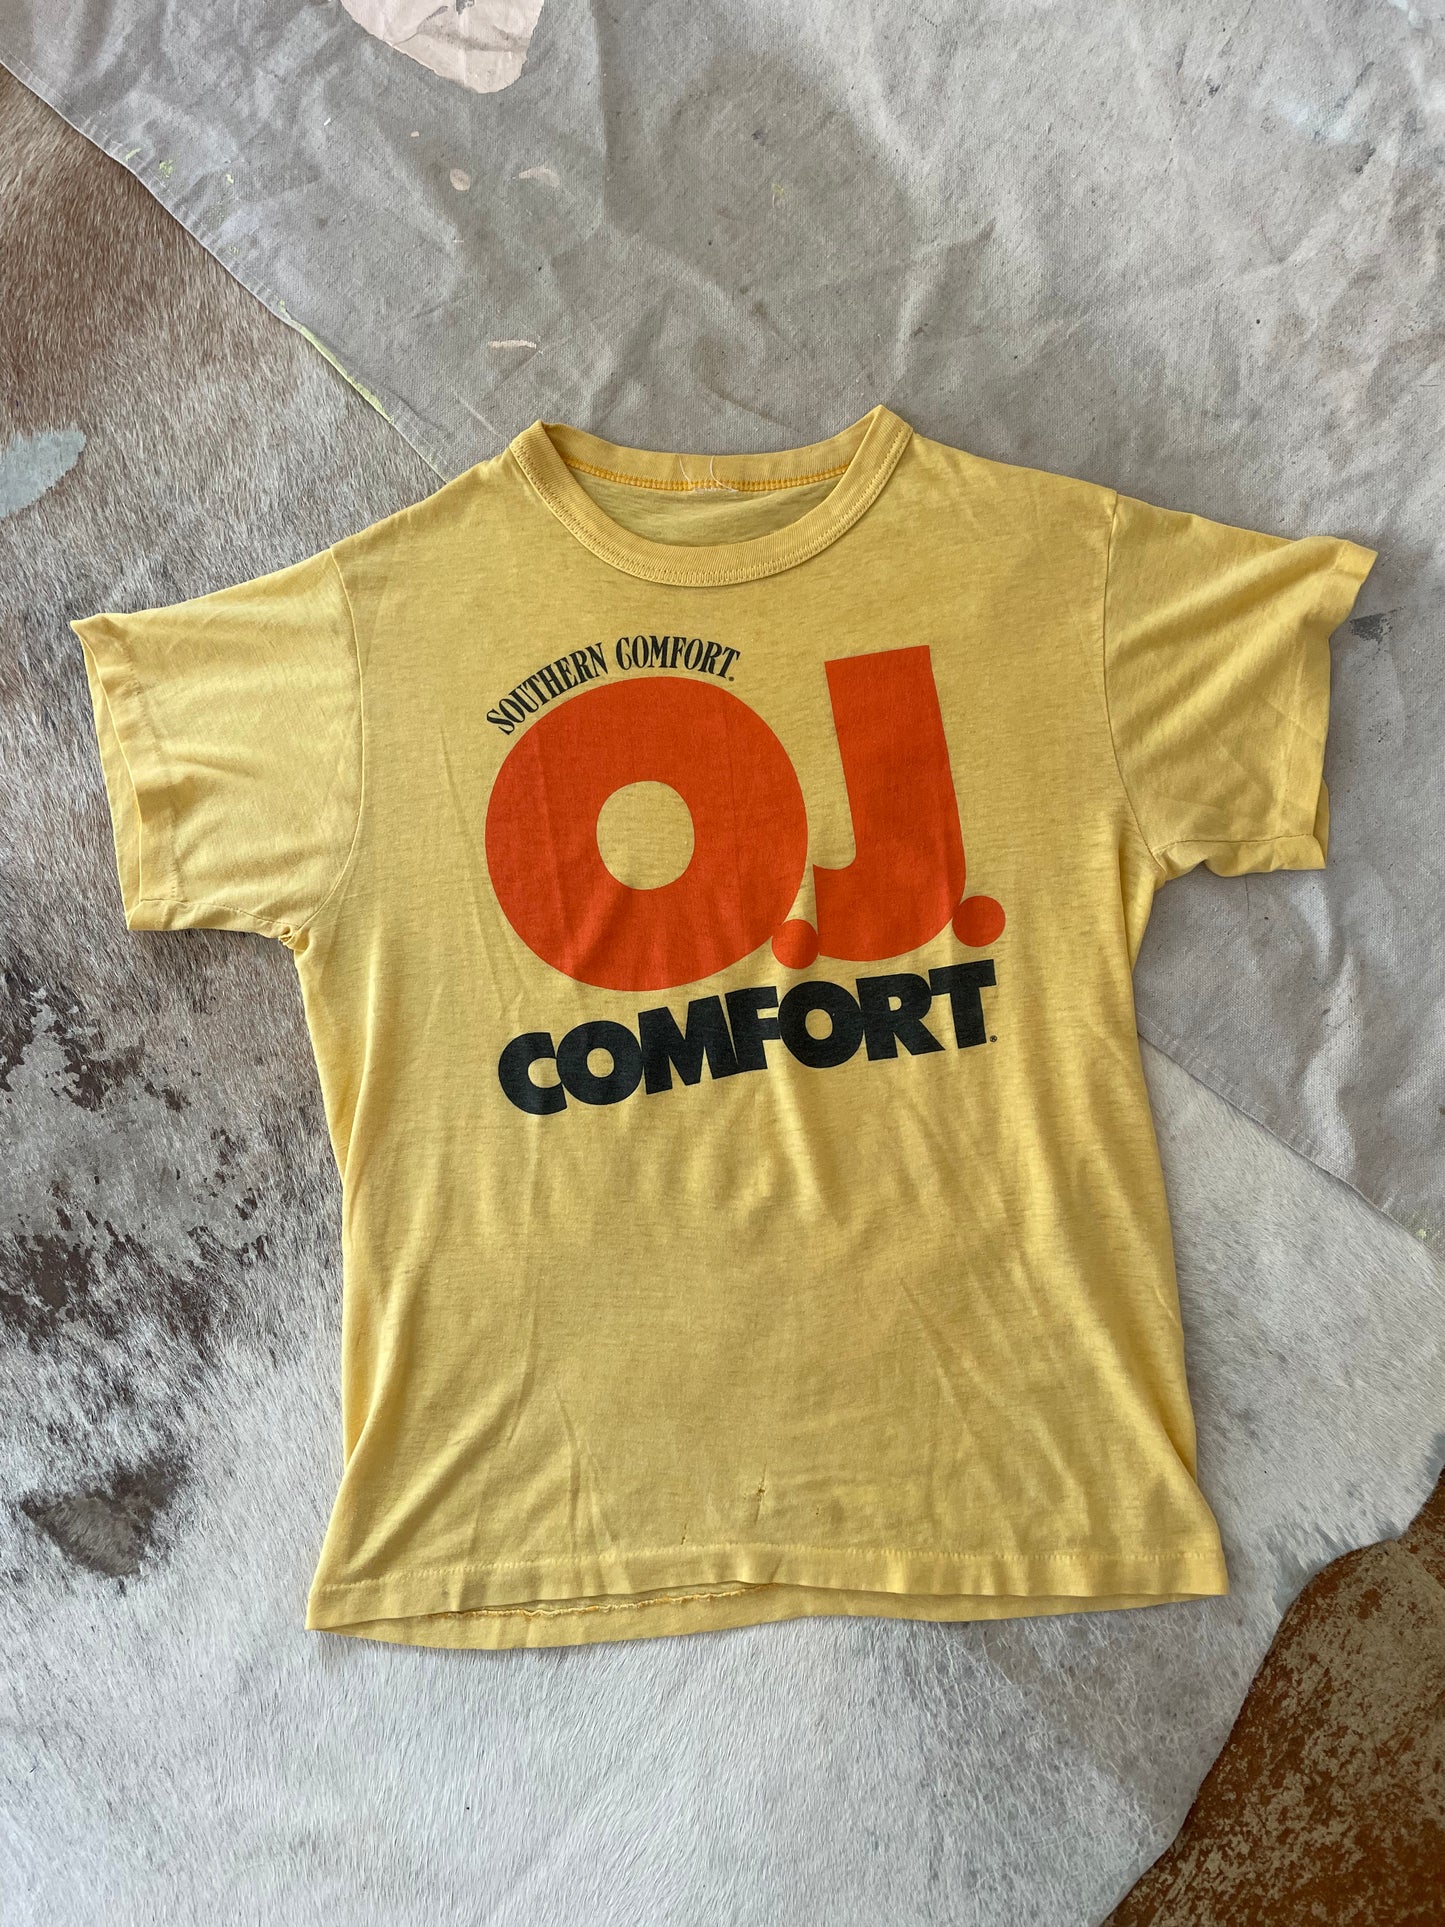 70s Southern Comfort O.J. Comfort Tee